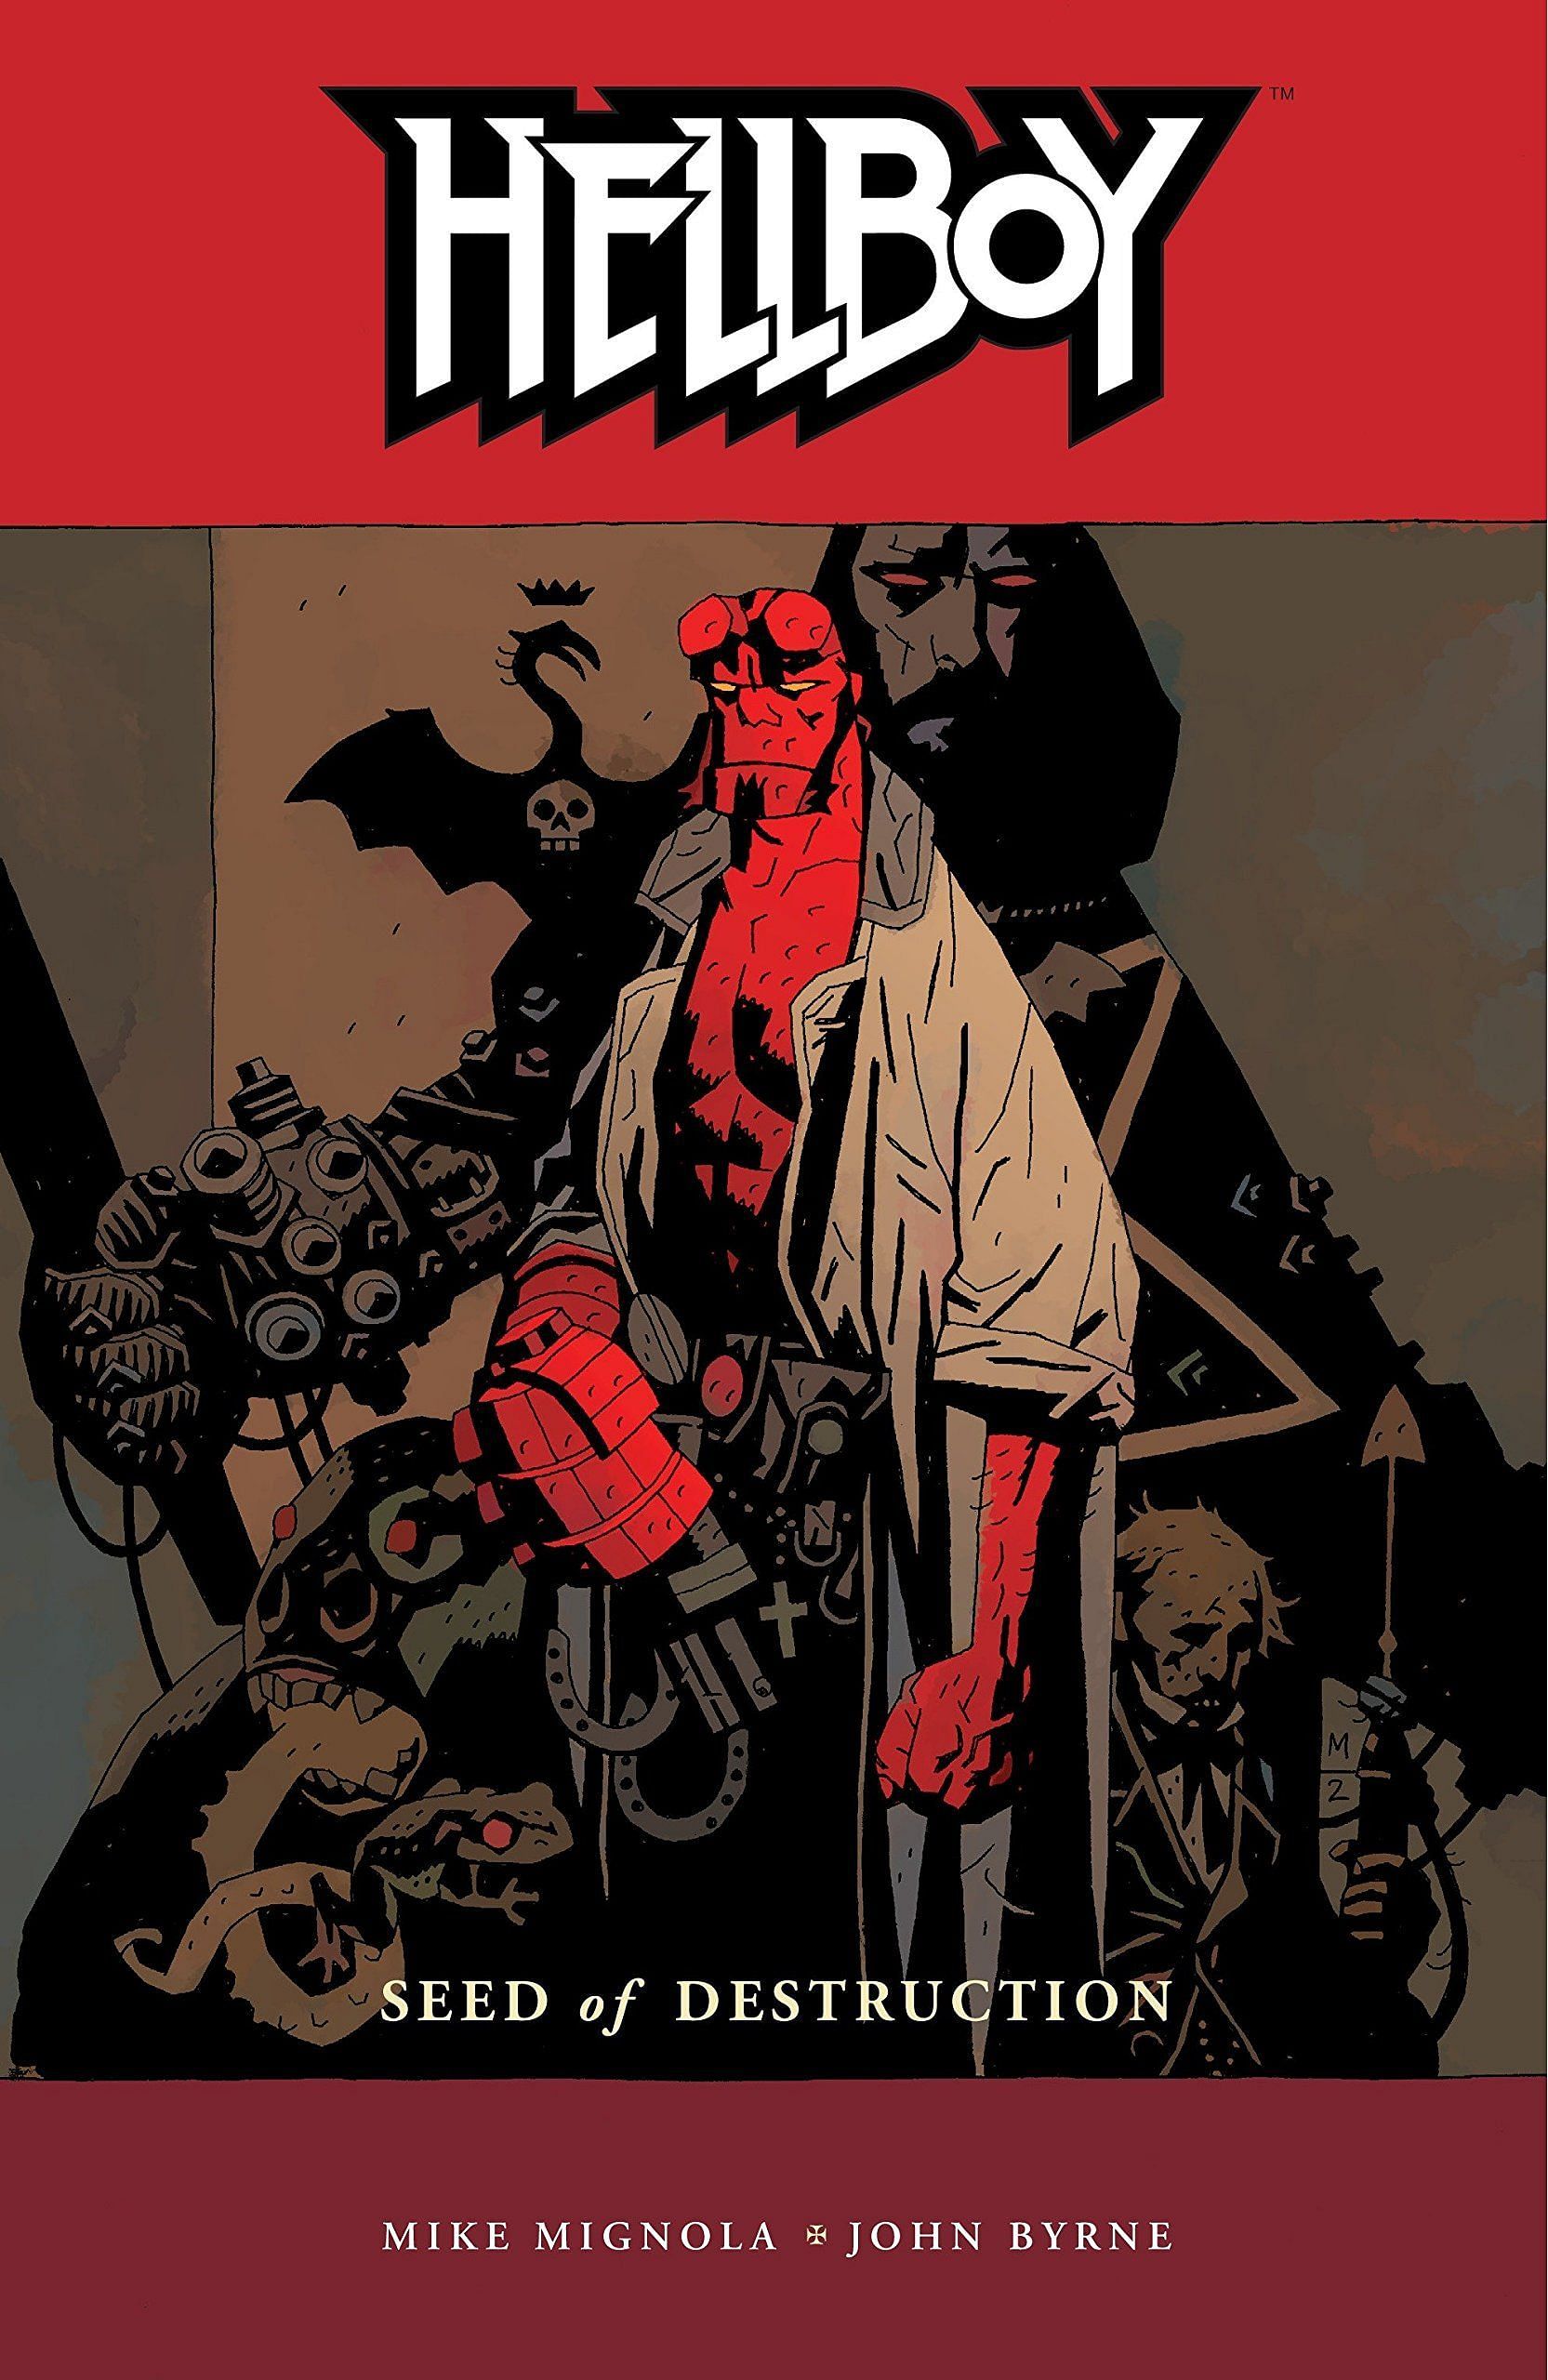 Hellboy comic cover (Image via Dark Horse Comics)